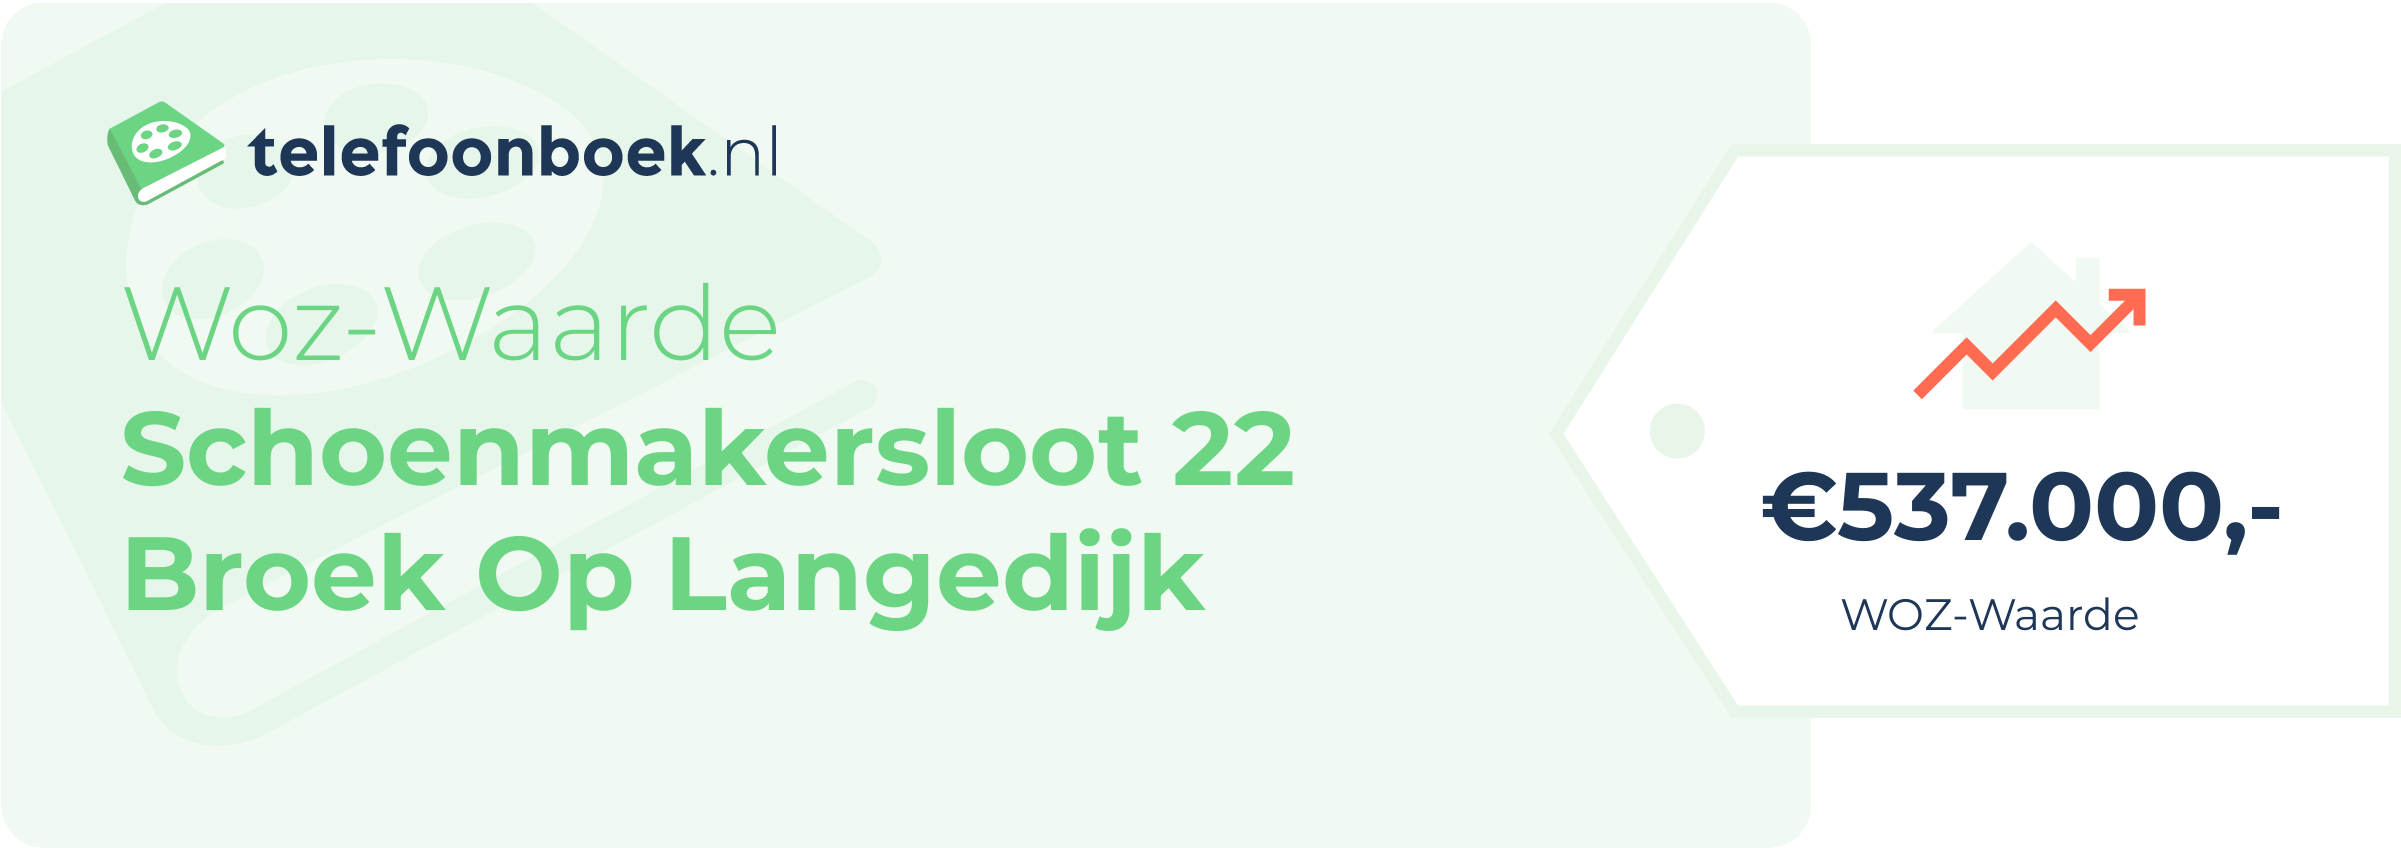 WOZ-waarde Schoenmakersloot 22 Broek Op Langedijk